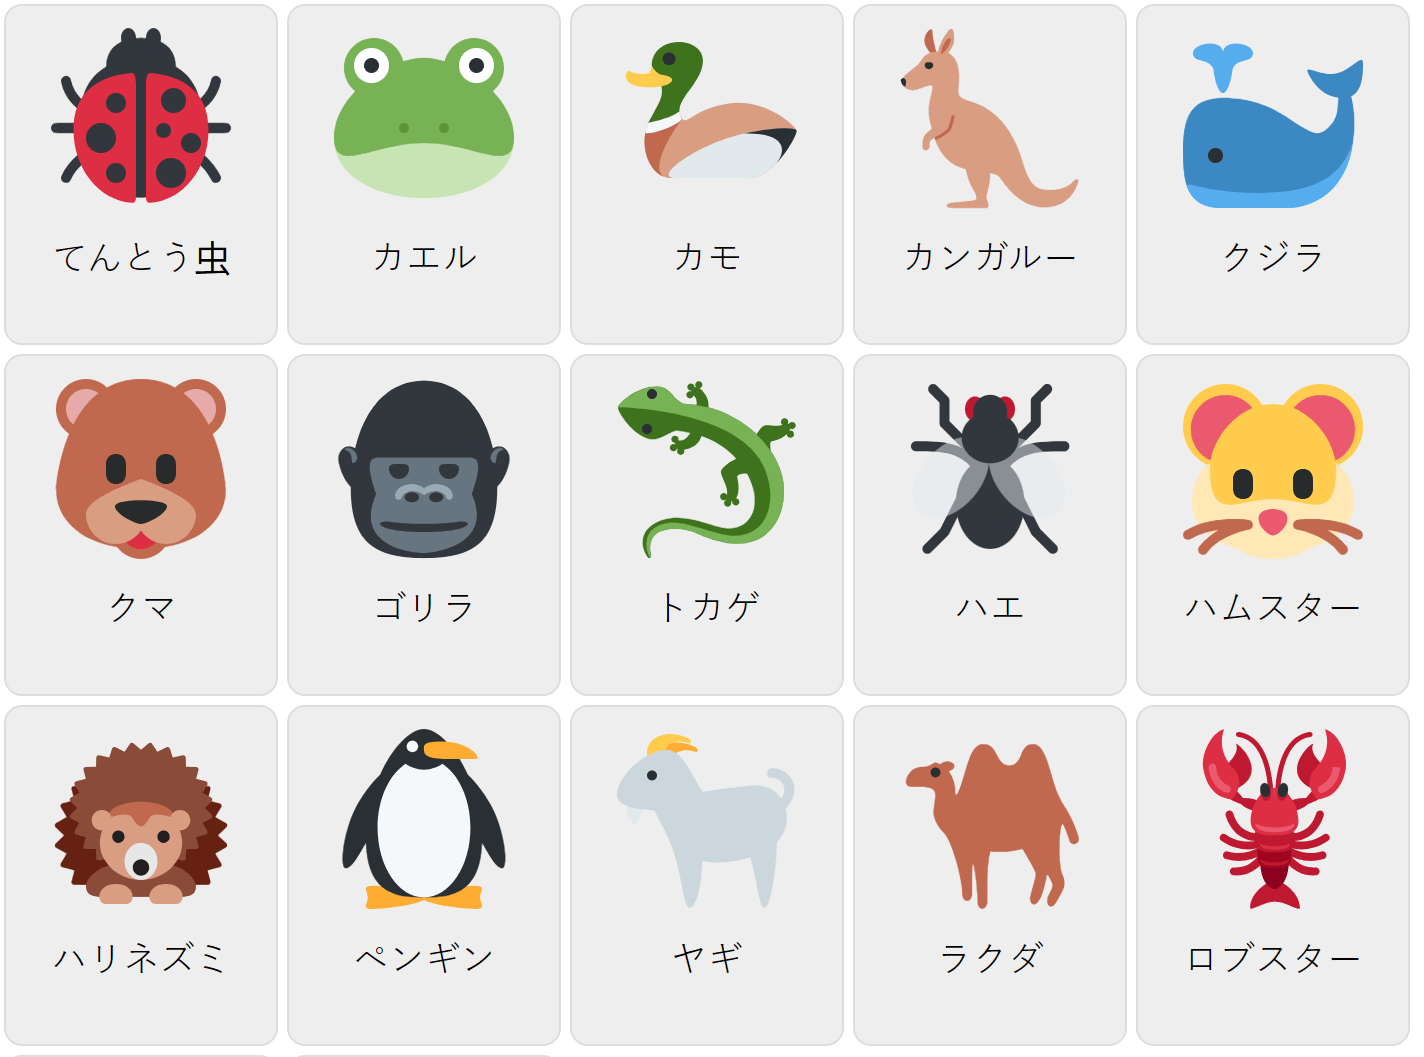 Tiere auf Japanisch 2